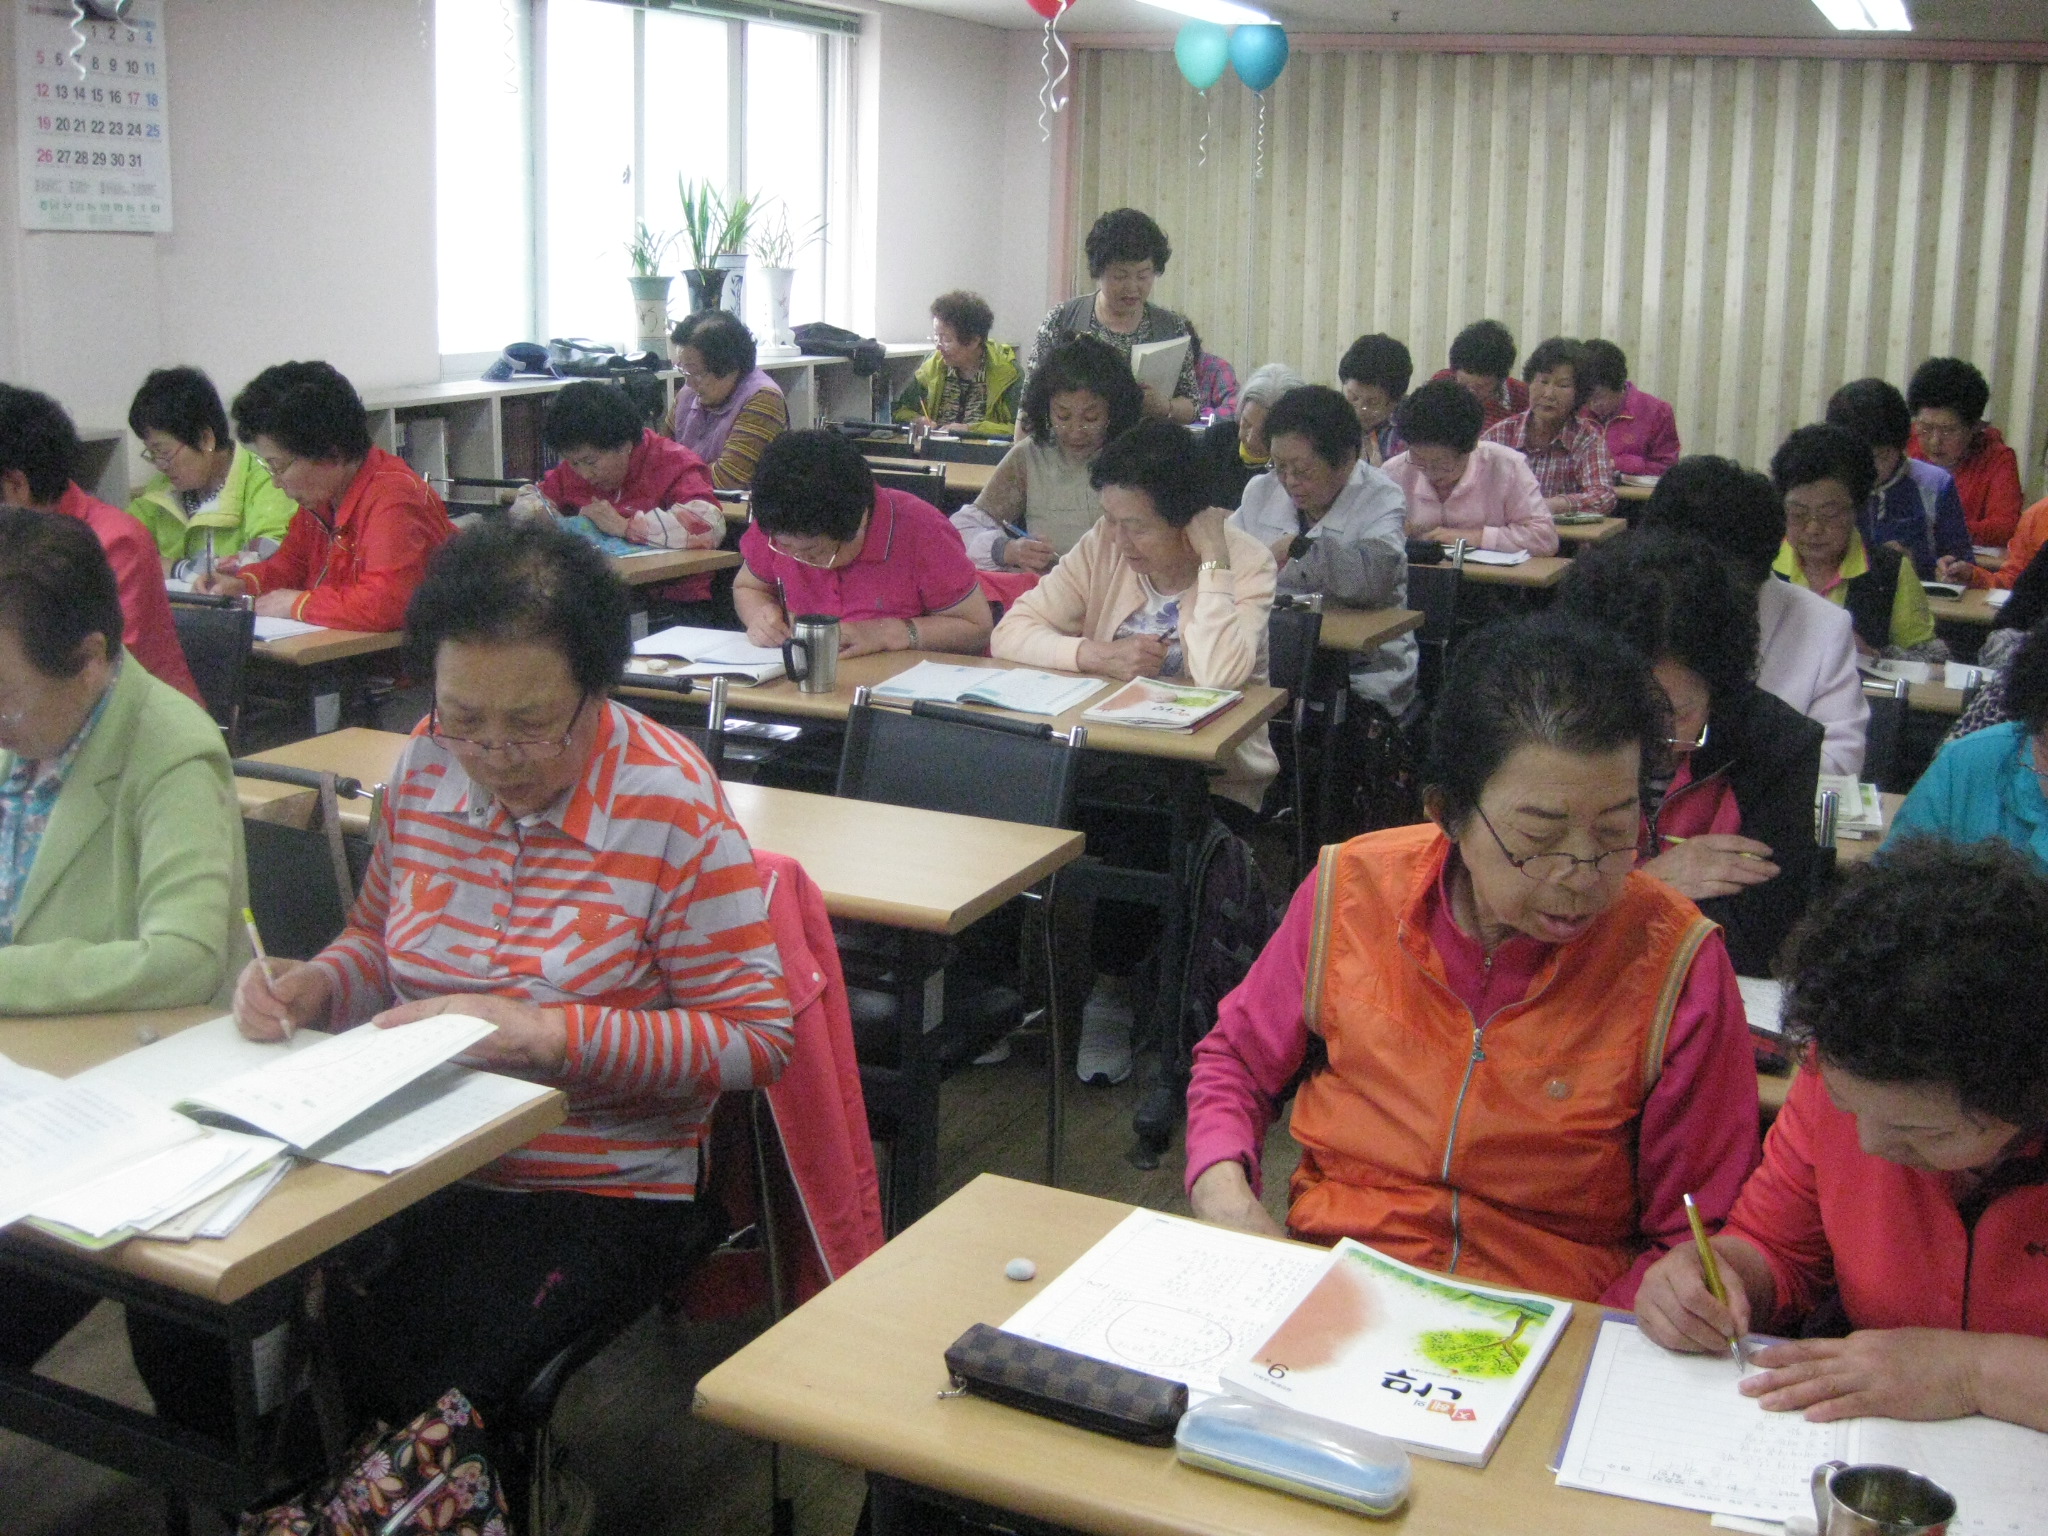 2013 성인문해교육 지원사업 중간운영 점검 사진자료